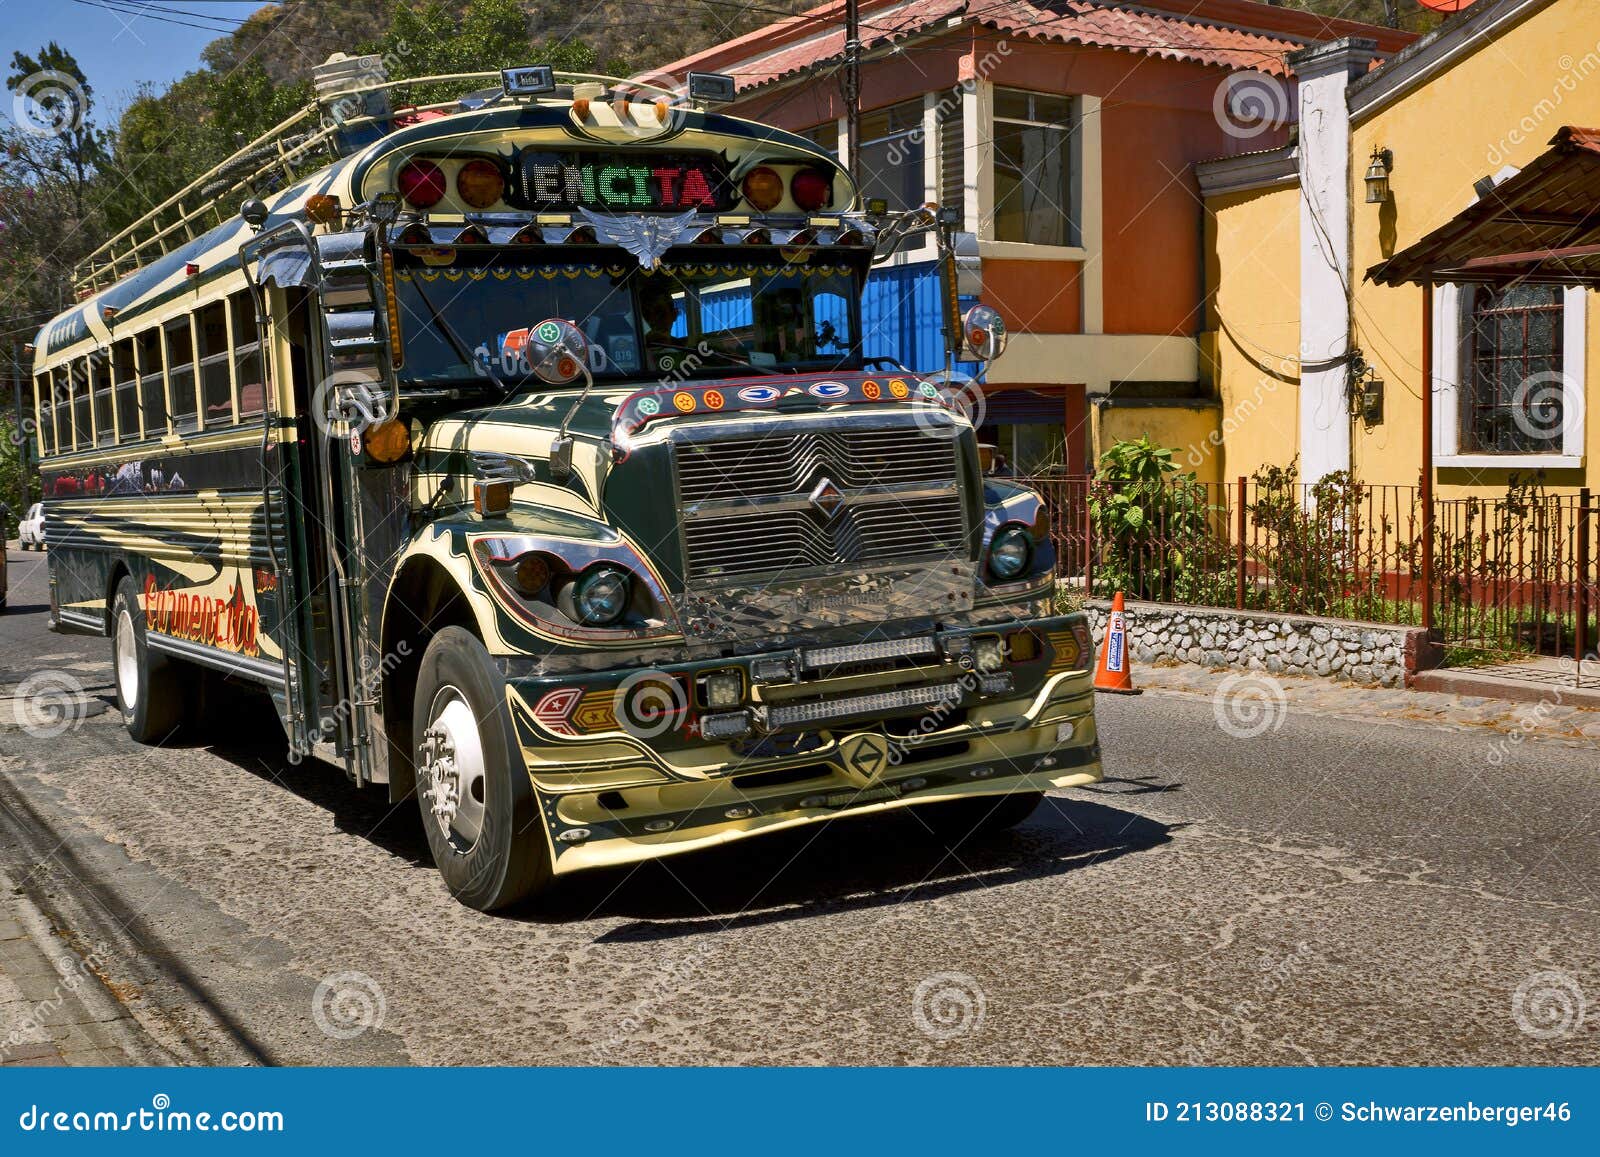 危地马拉 危地马拉高地上色彩缤纷的鸡巴车编辑类照片 图片包括有公共 旅游业 危地马拉 业务量